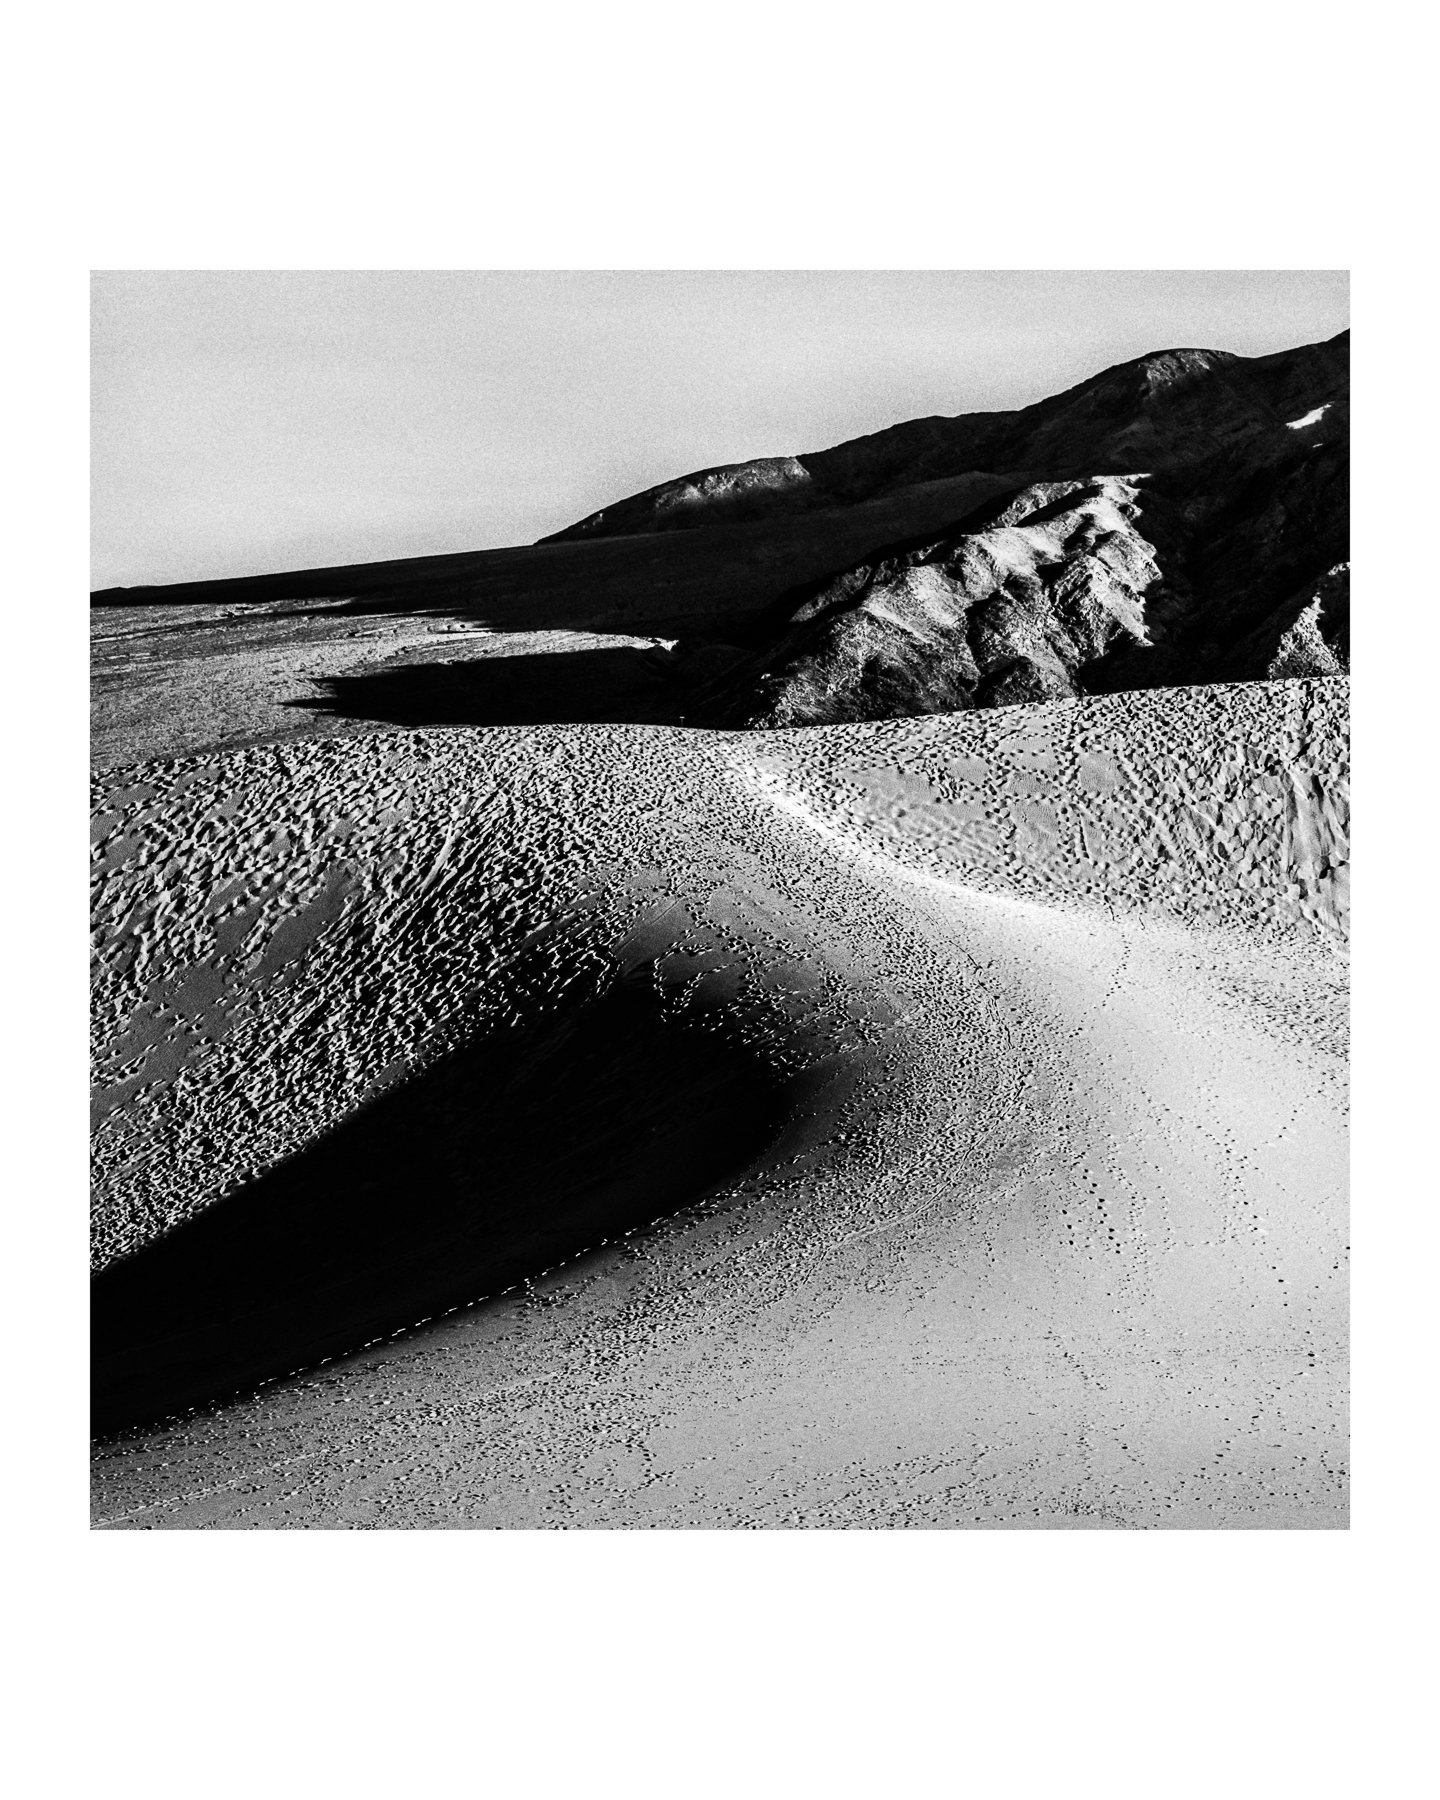 The Dunes 07